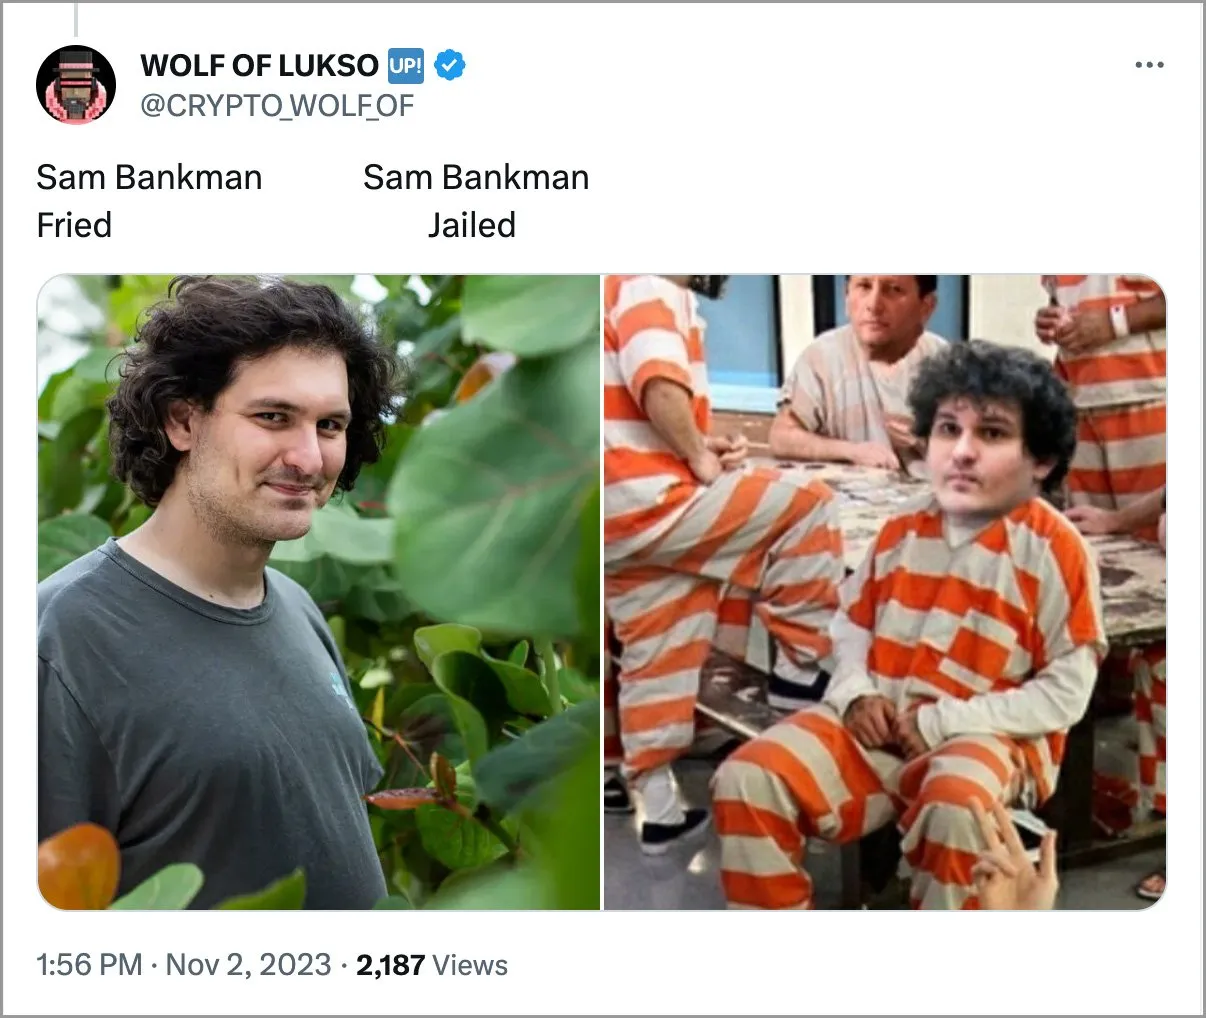 Ο Sam Bankman φυλακίστηκε